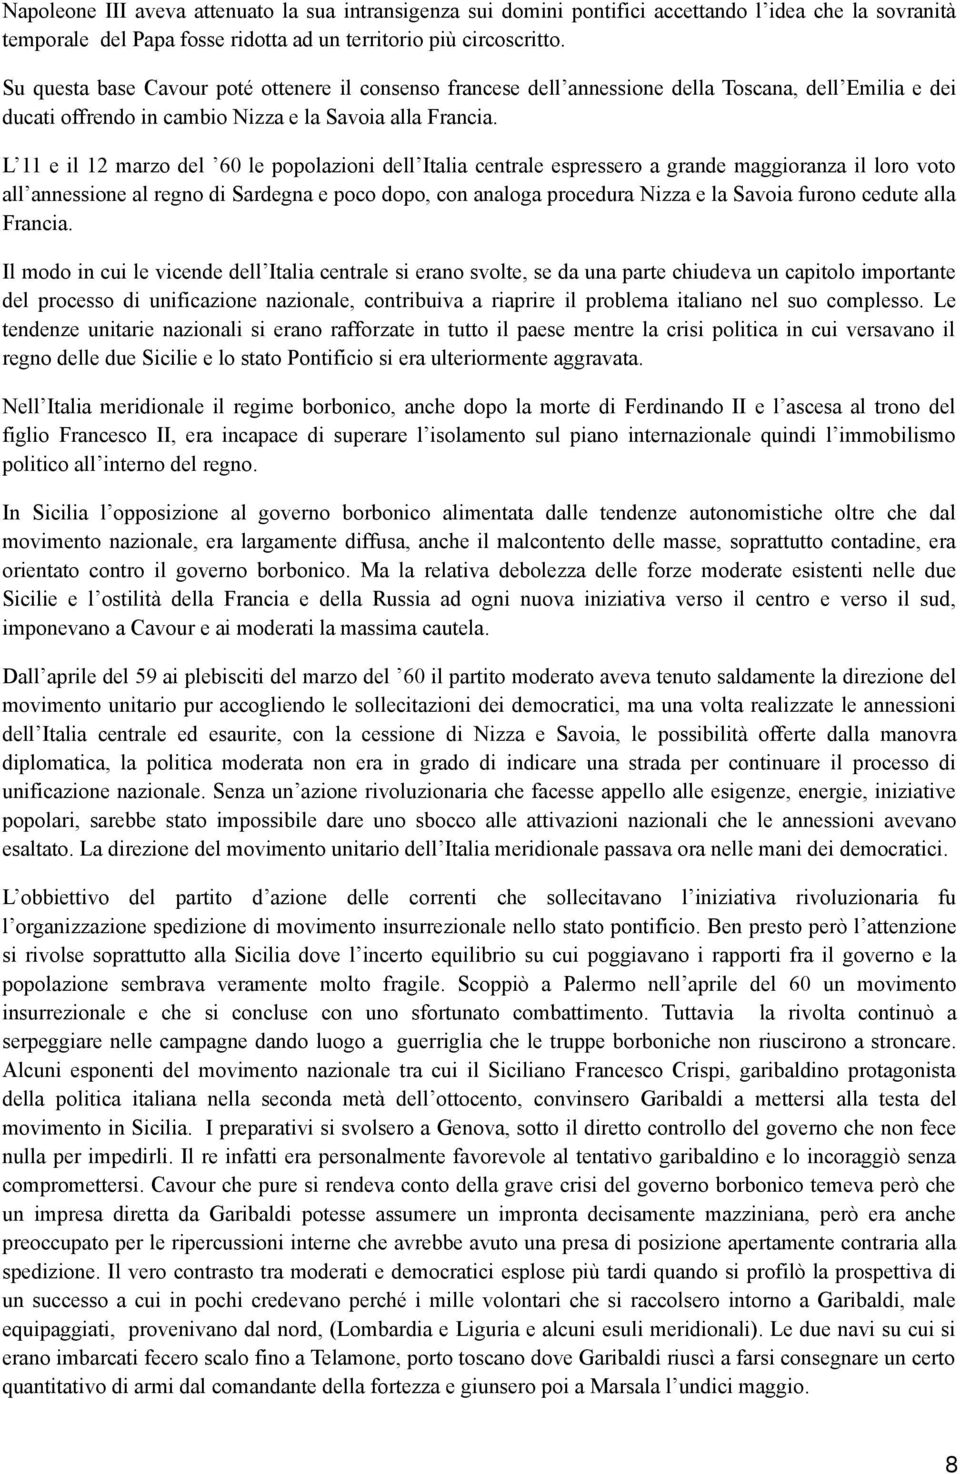 L 11 e il 12 marzo del 60 le popolazioni dell Italia centrale espressero a grande maggioranza il loro voto all annessione al regno di Sardegna e poco dopo, con analoga procedura Nizza e la Savoia